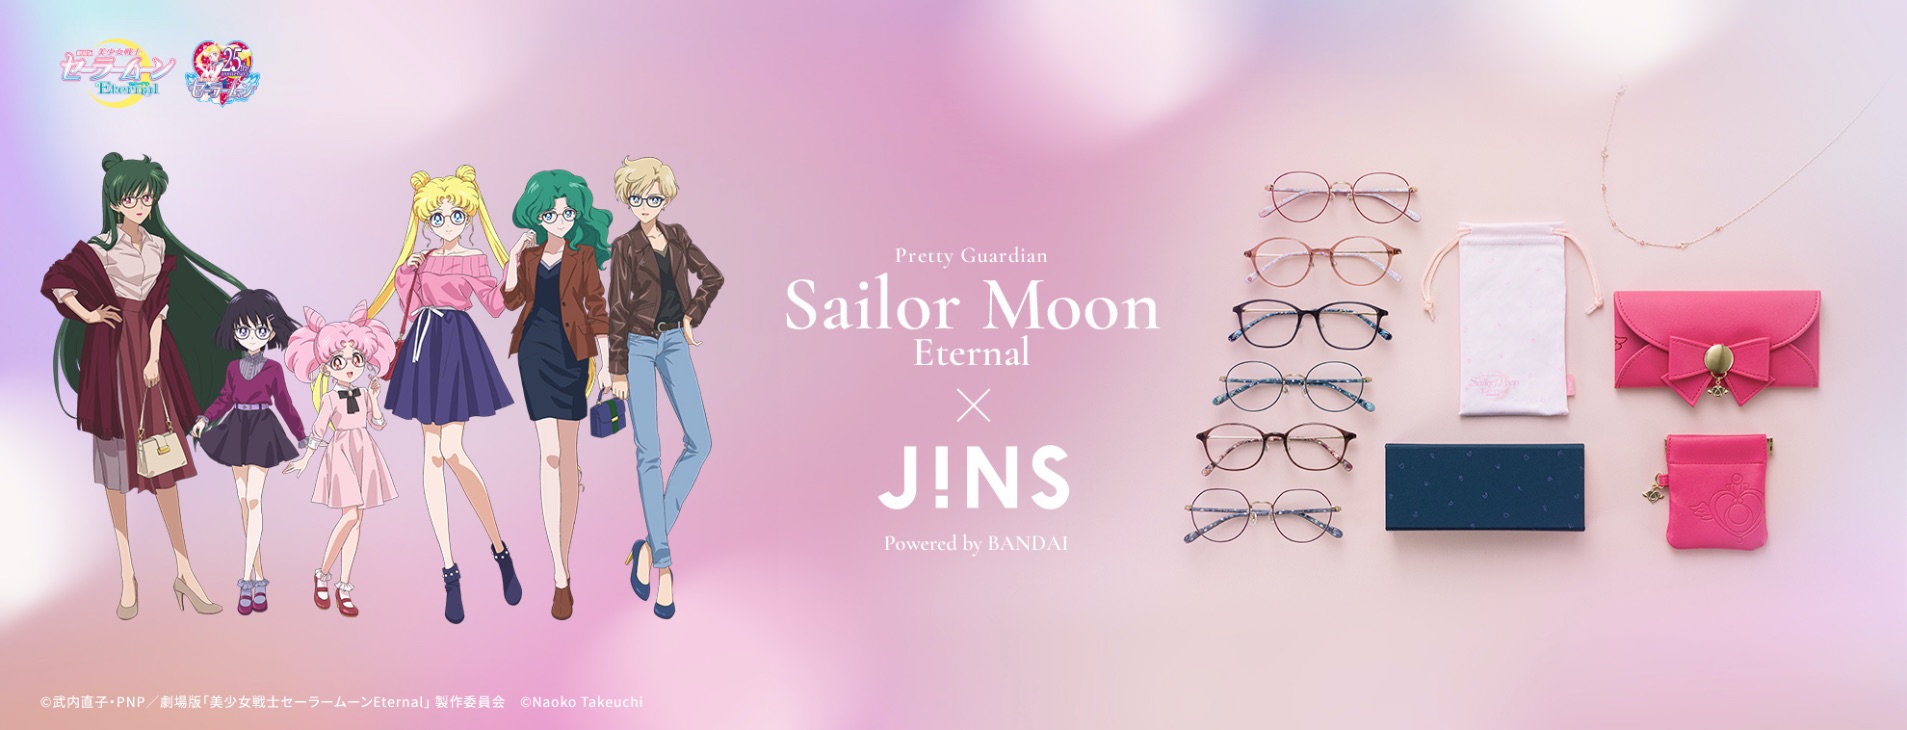 Jins x sailor moon